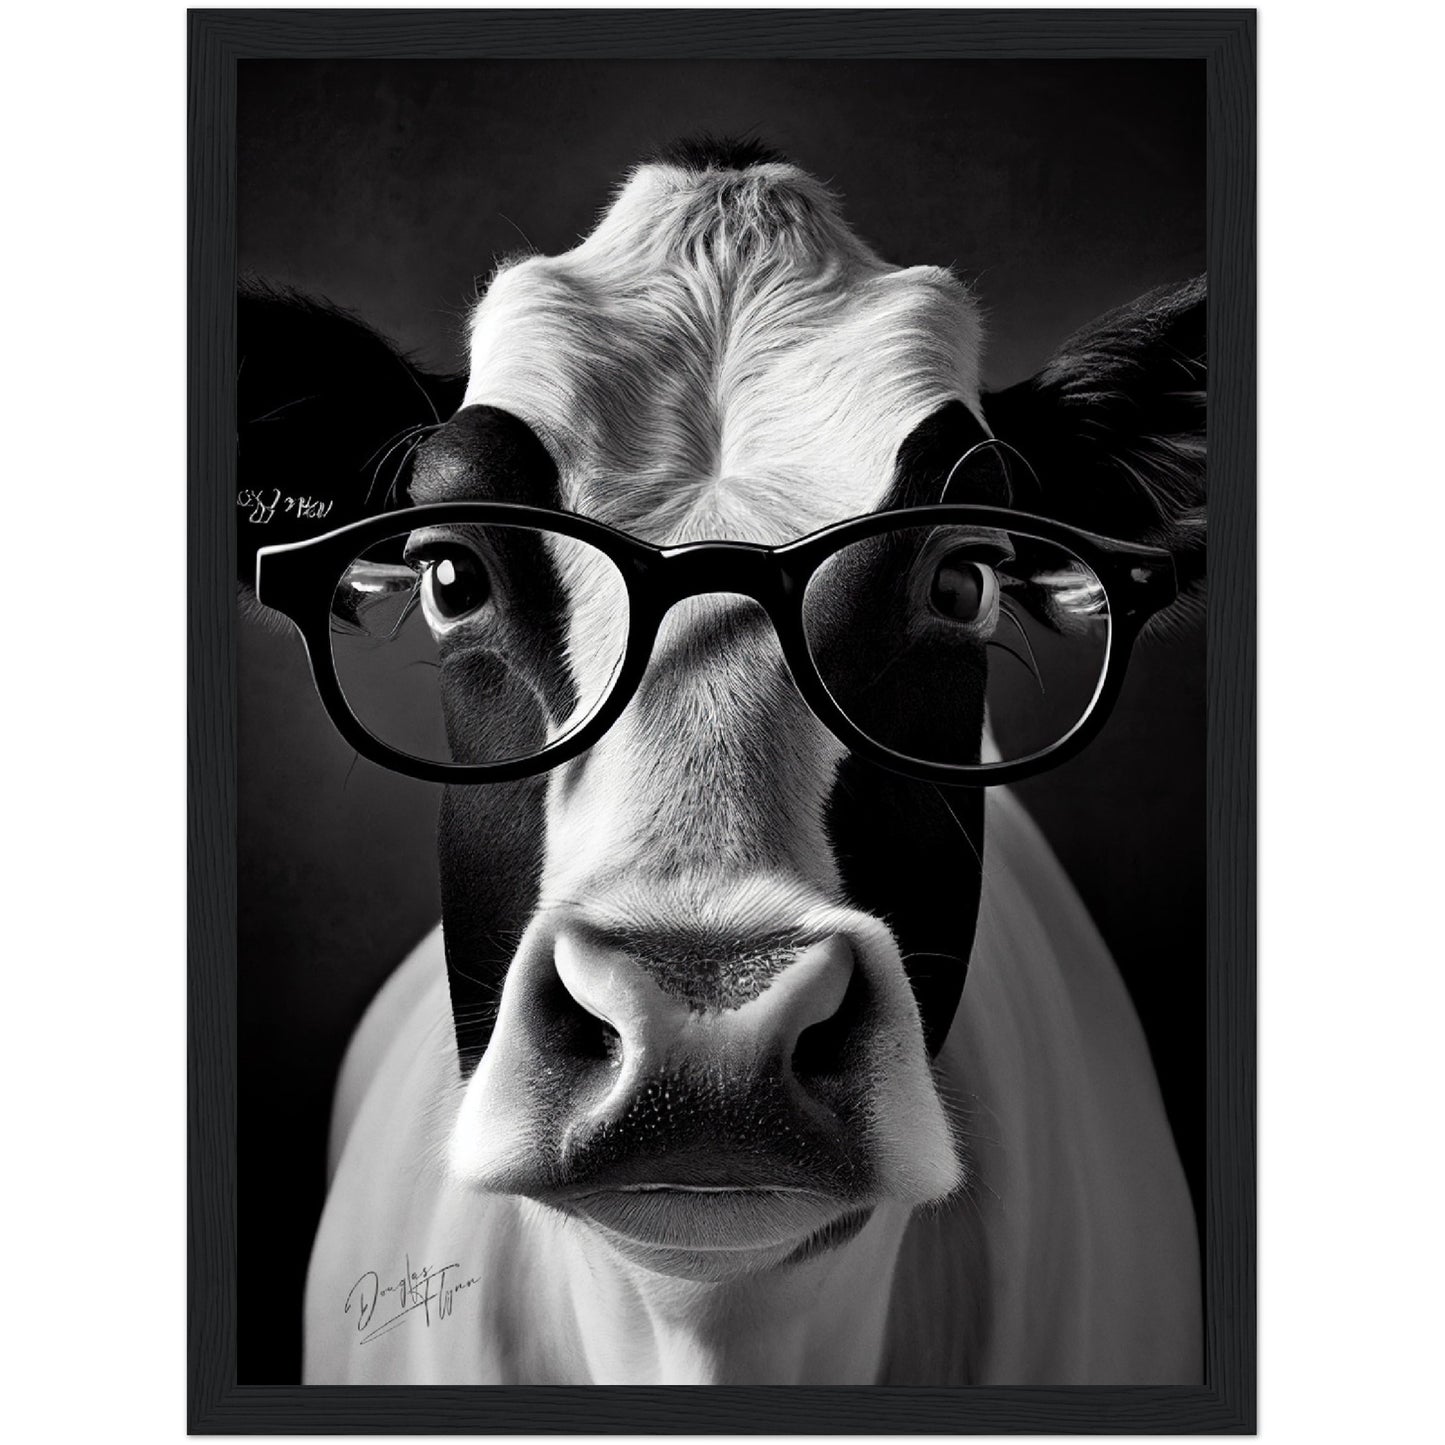 »Cattle Genius« retro poster